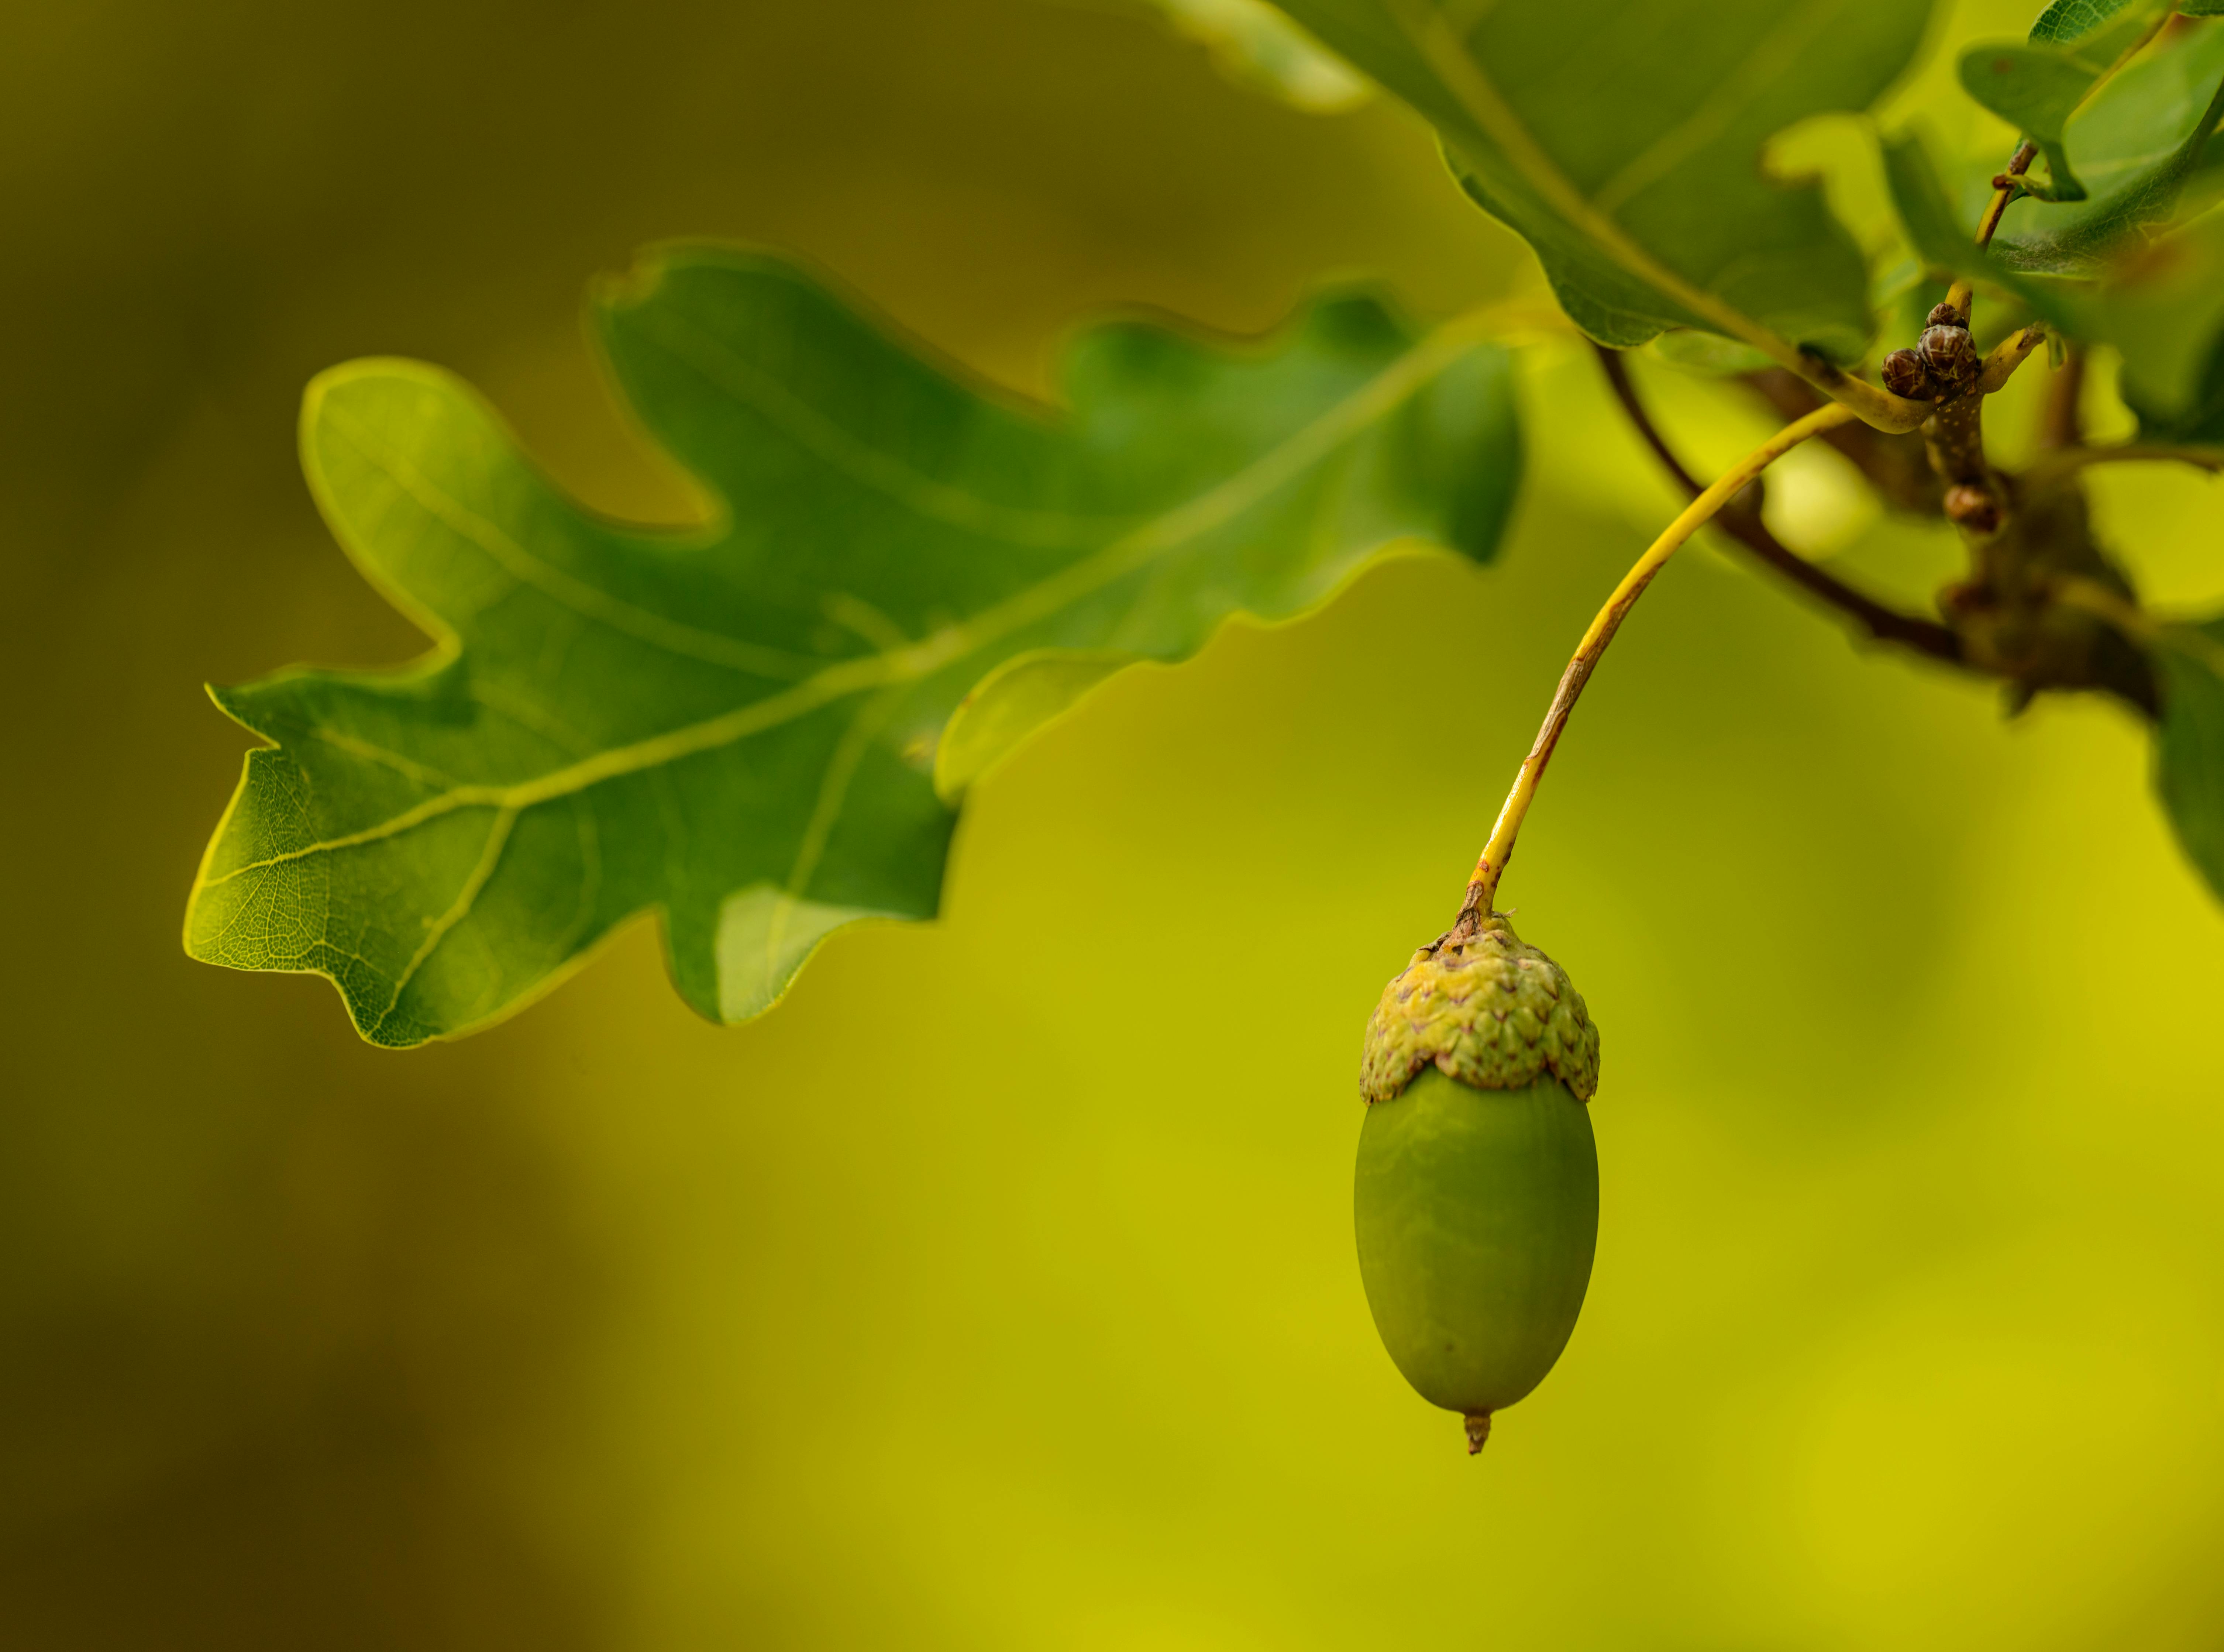 real green acorns